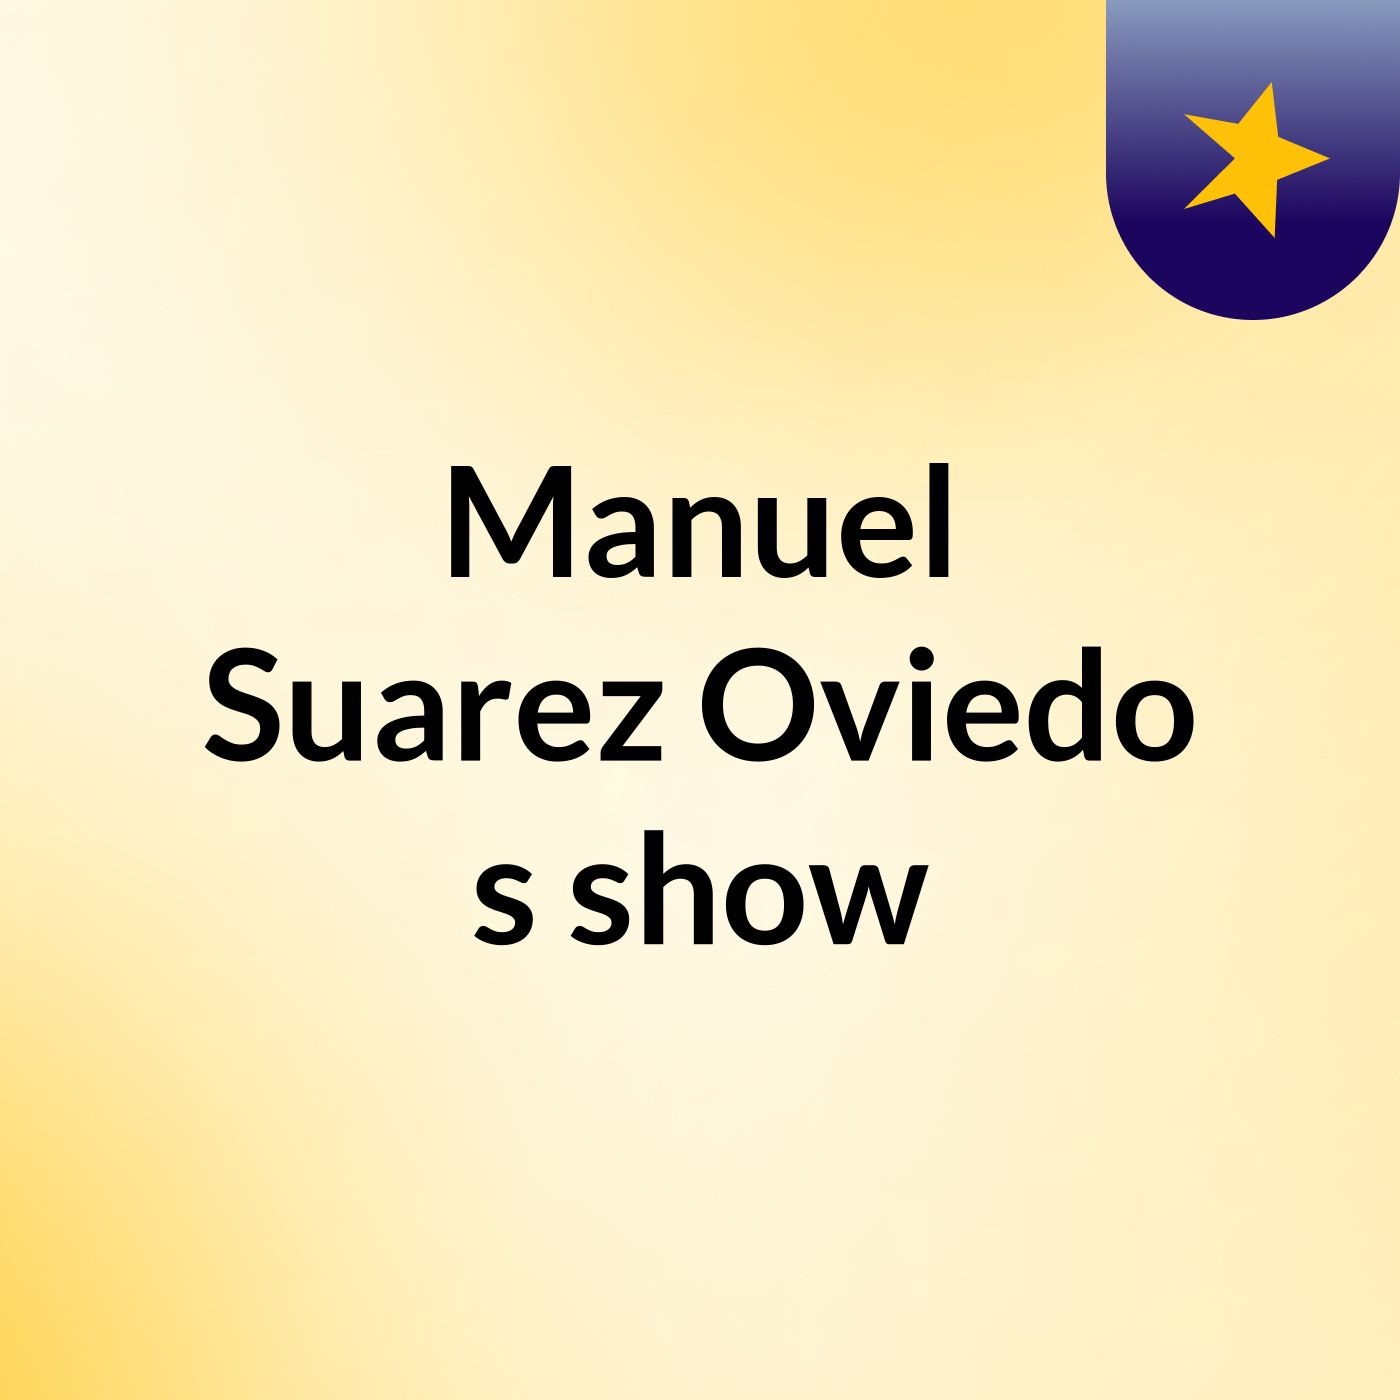 Manuel Suarez Oviedo's show